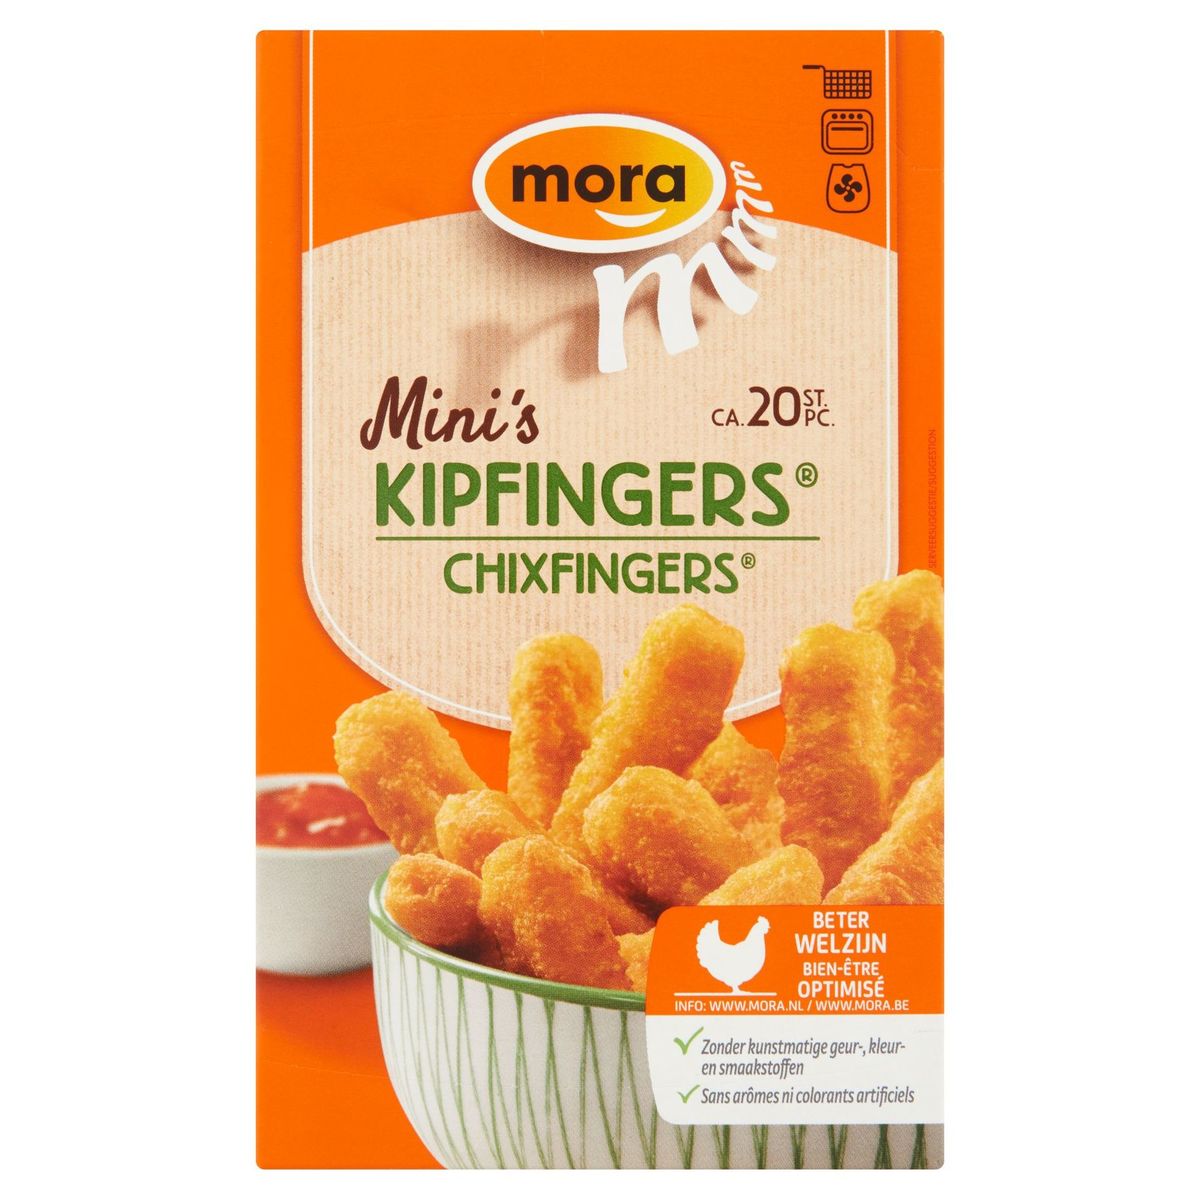 Mora Mini's Chixfingers 240 g